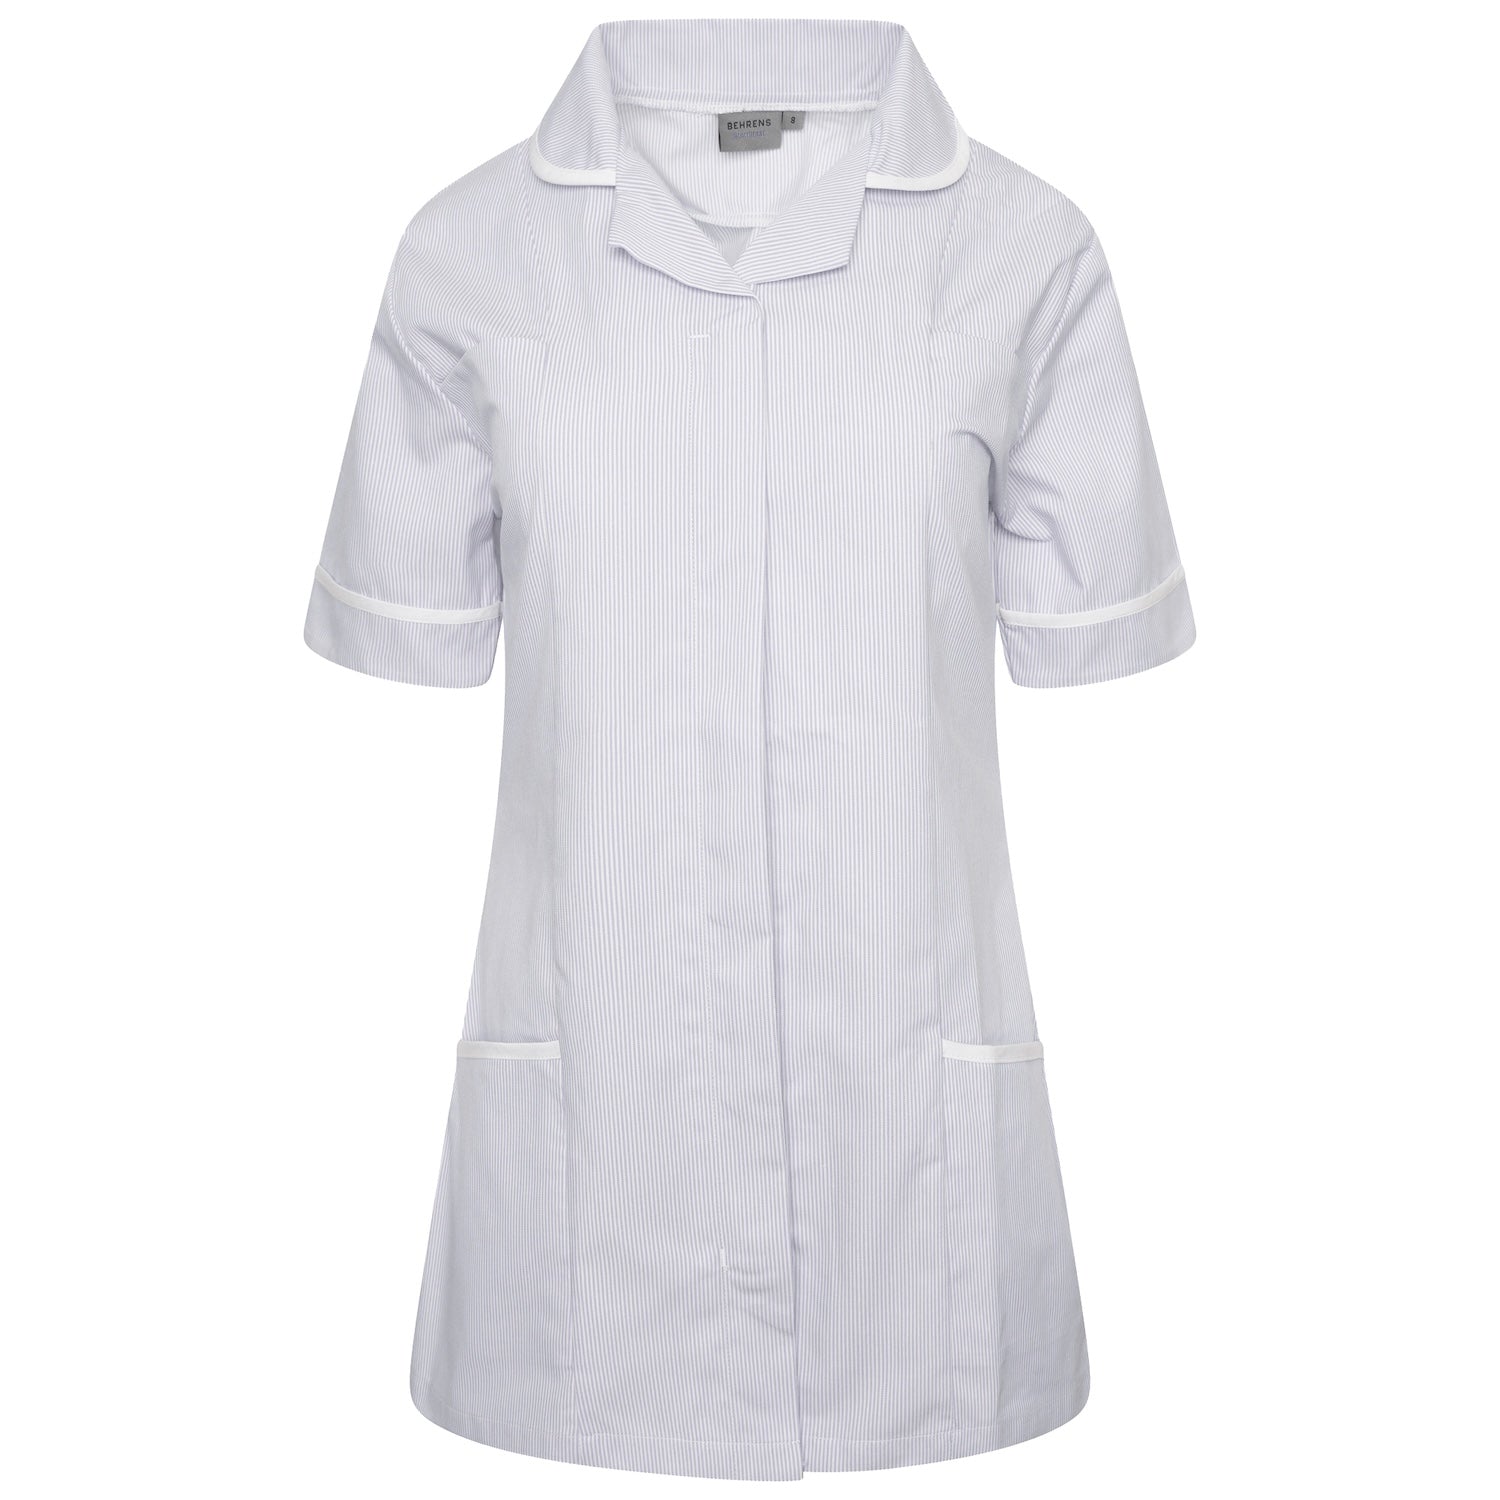 Ladies Healthcare Tunic | Round Collar | Grey White Stripe/White Trim